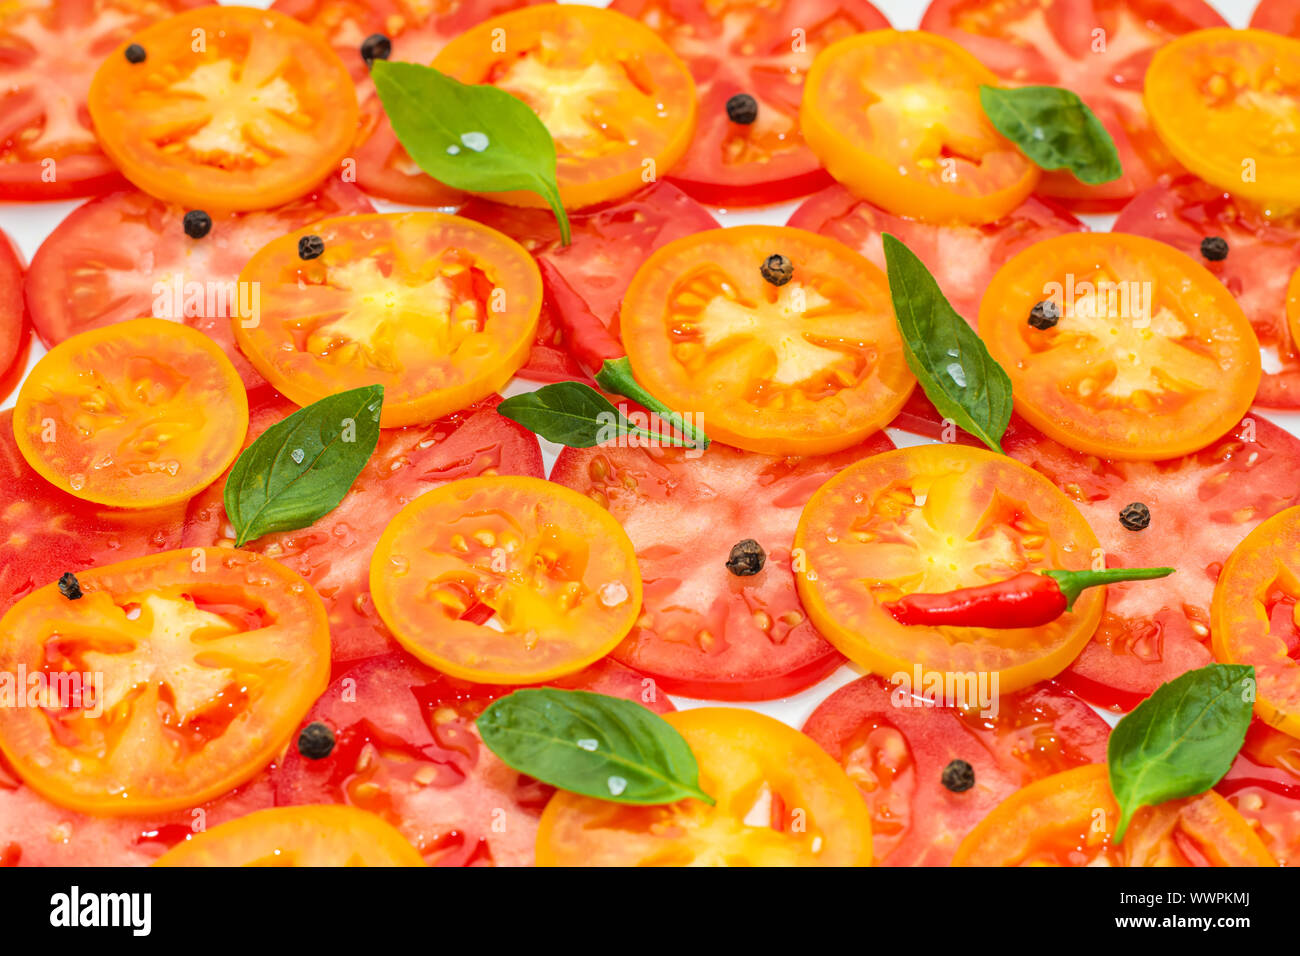 Tranches fines de fruits rouges, jaunes et orange décoré de tomates feuilles de basilic vert et noir, poivrons rouges sur fond blanc Banque D'Images